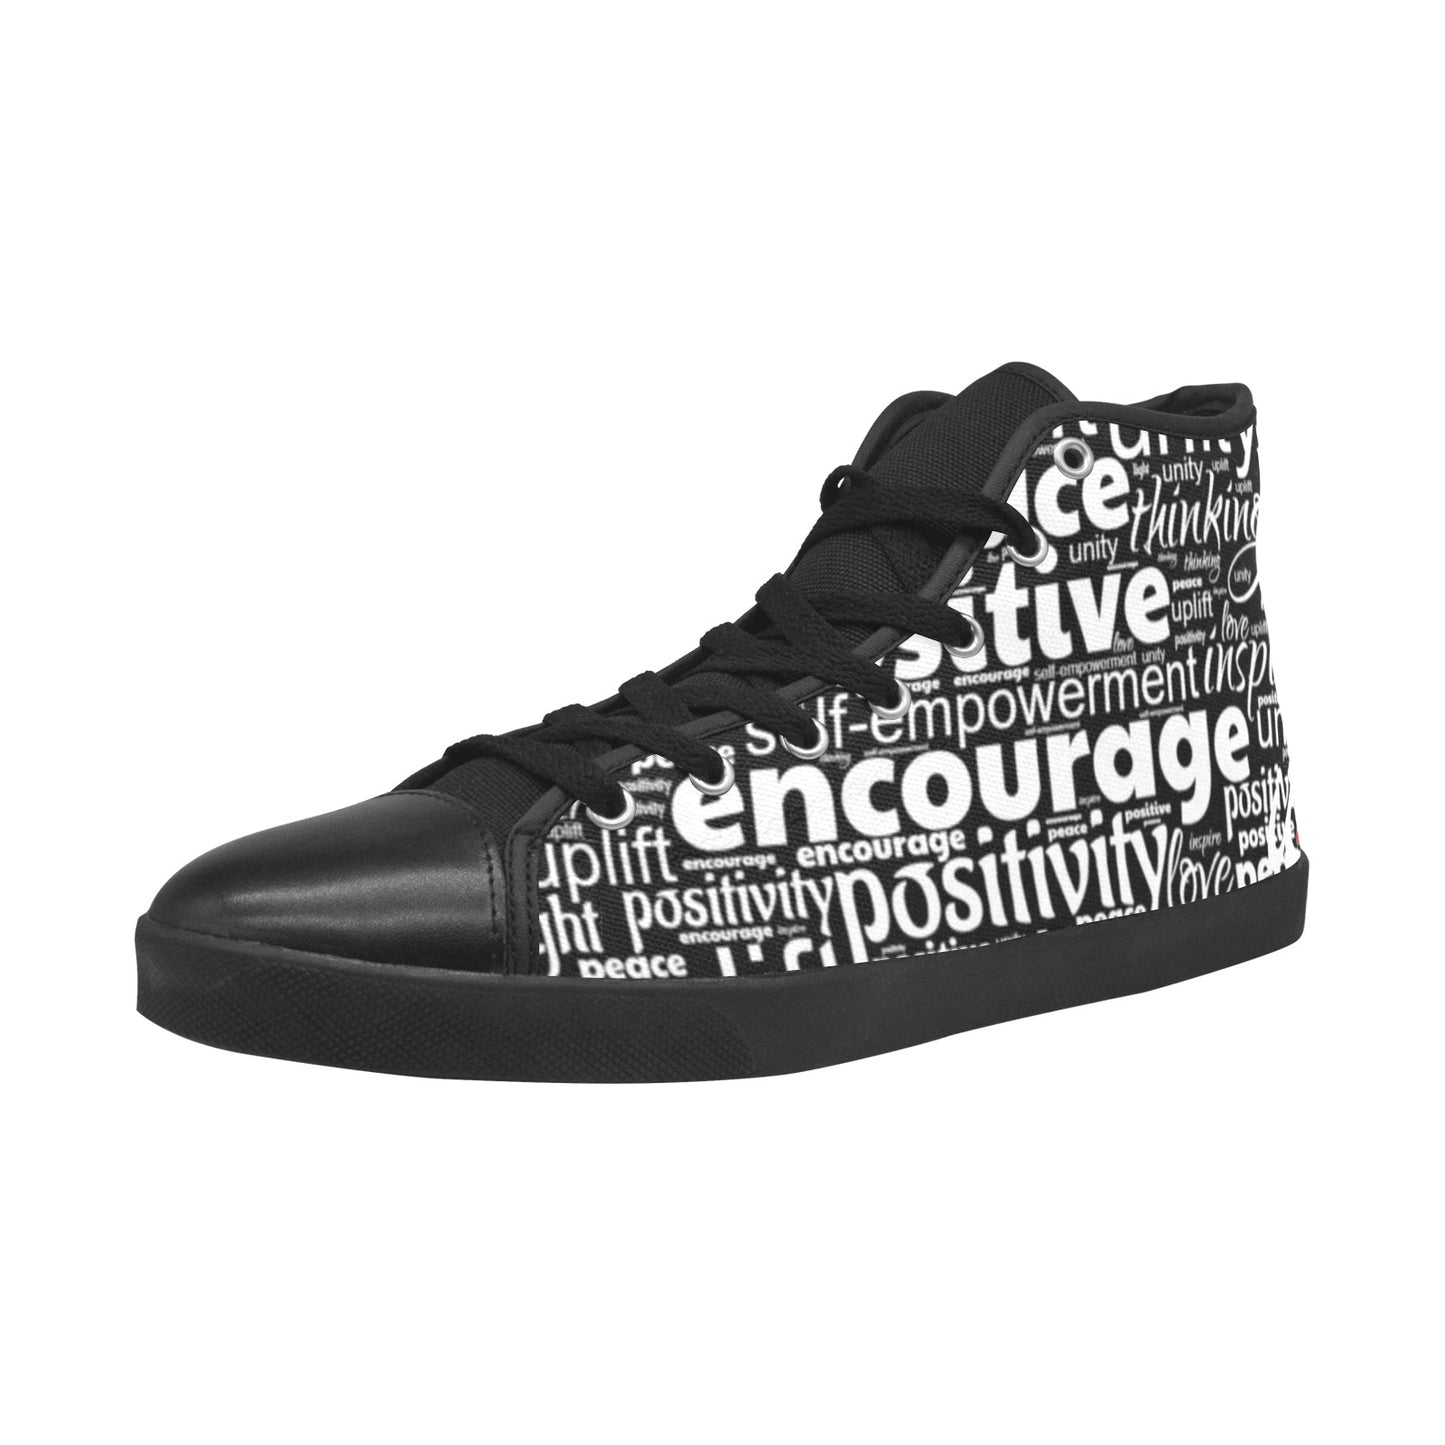 Positively u - Black High Top Canvas Men's Shoes